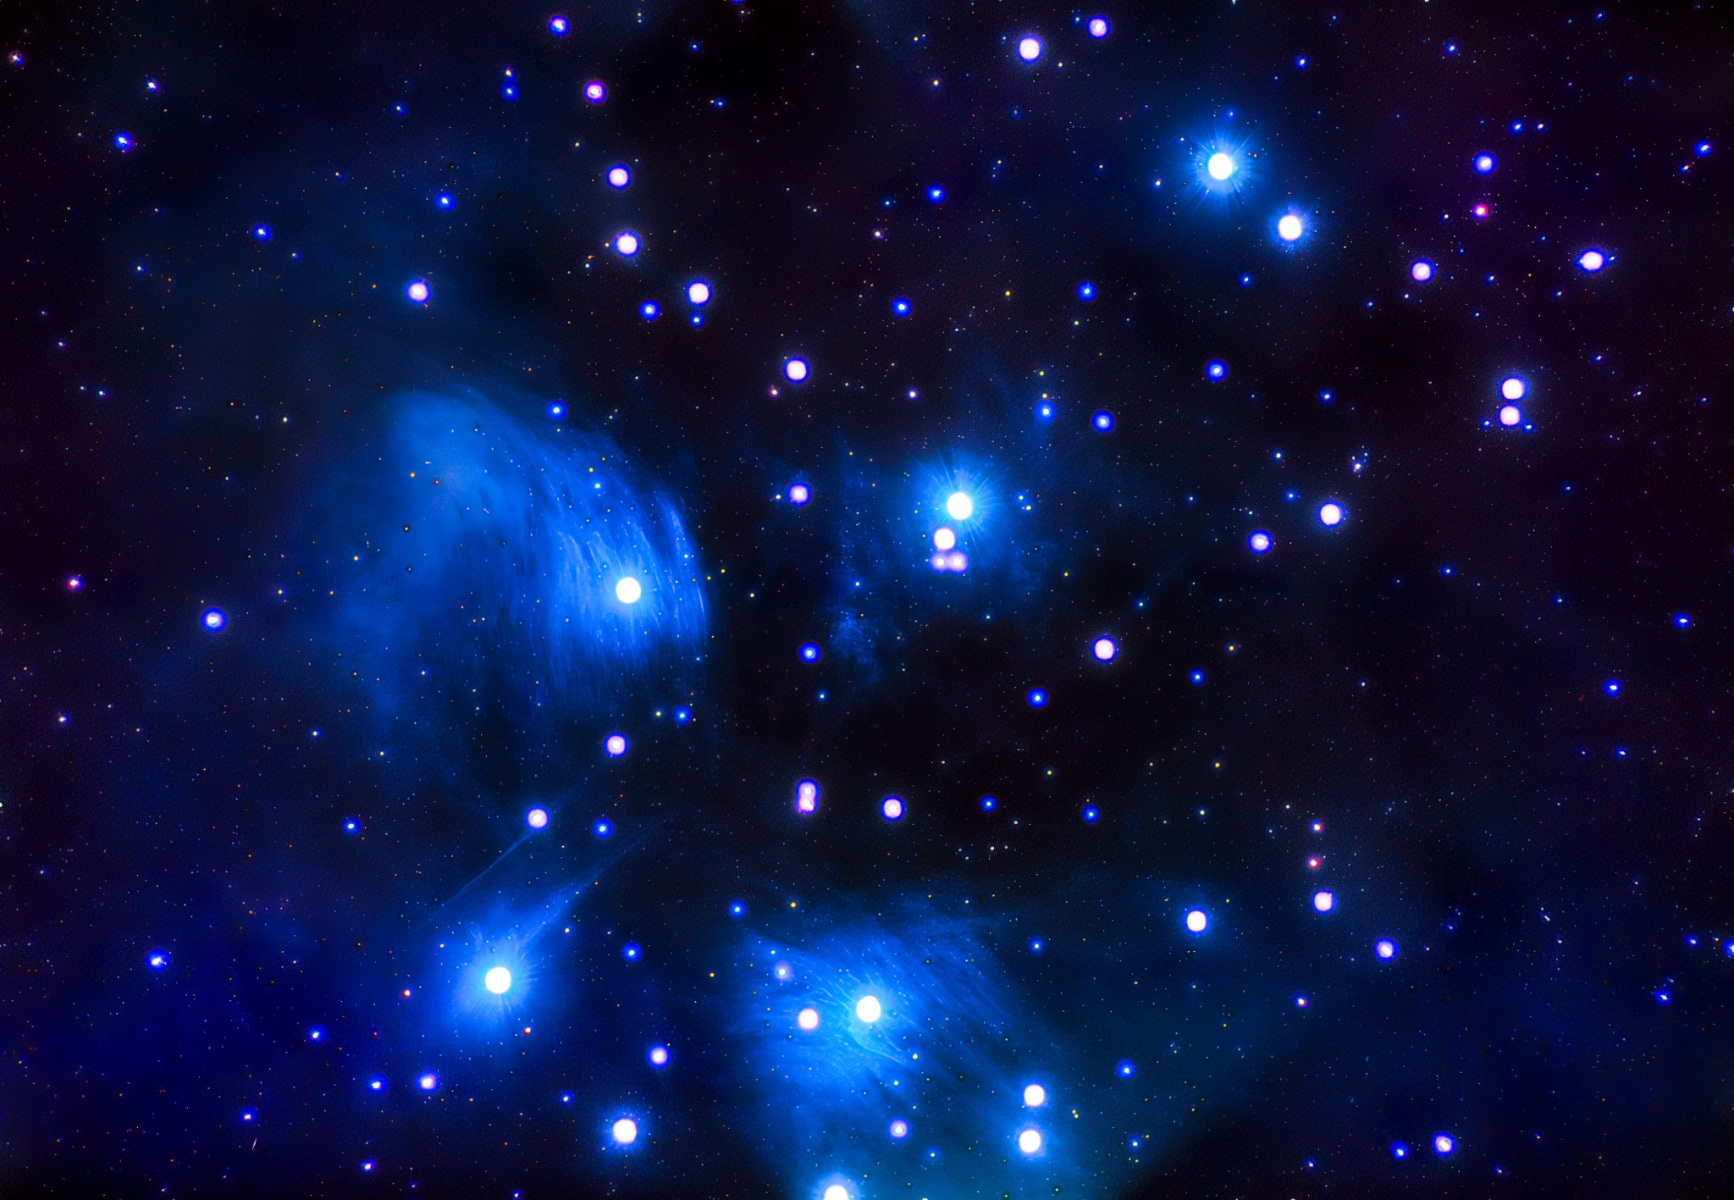 Pleiades M45